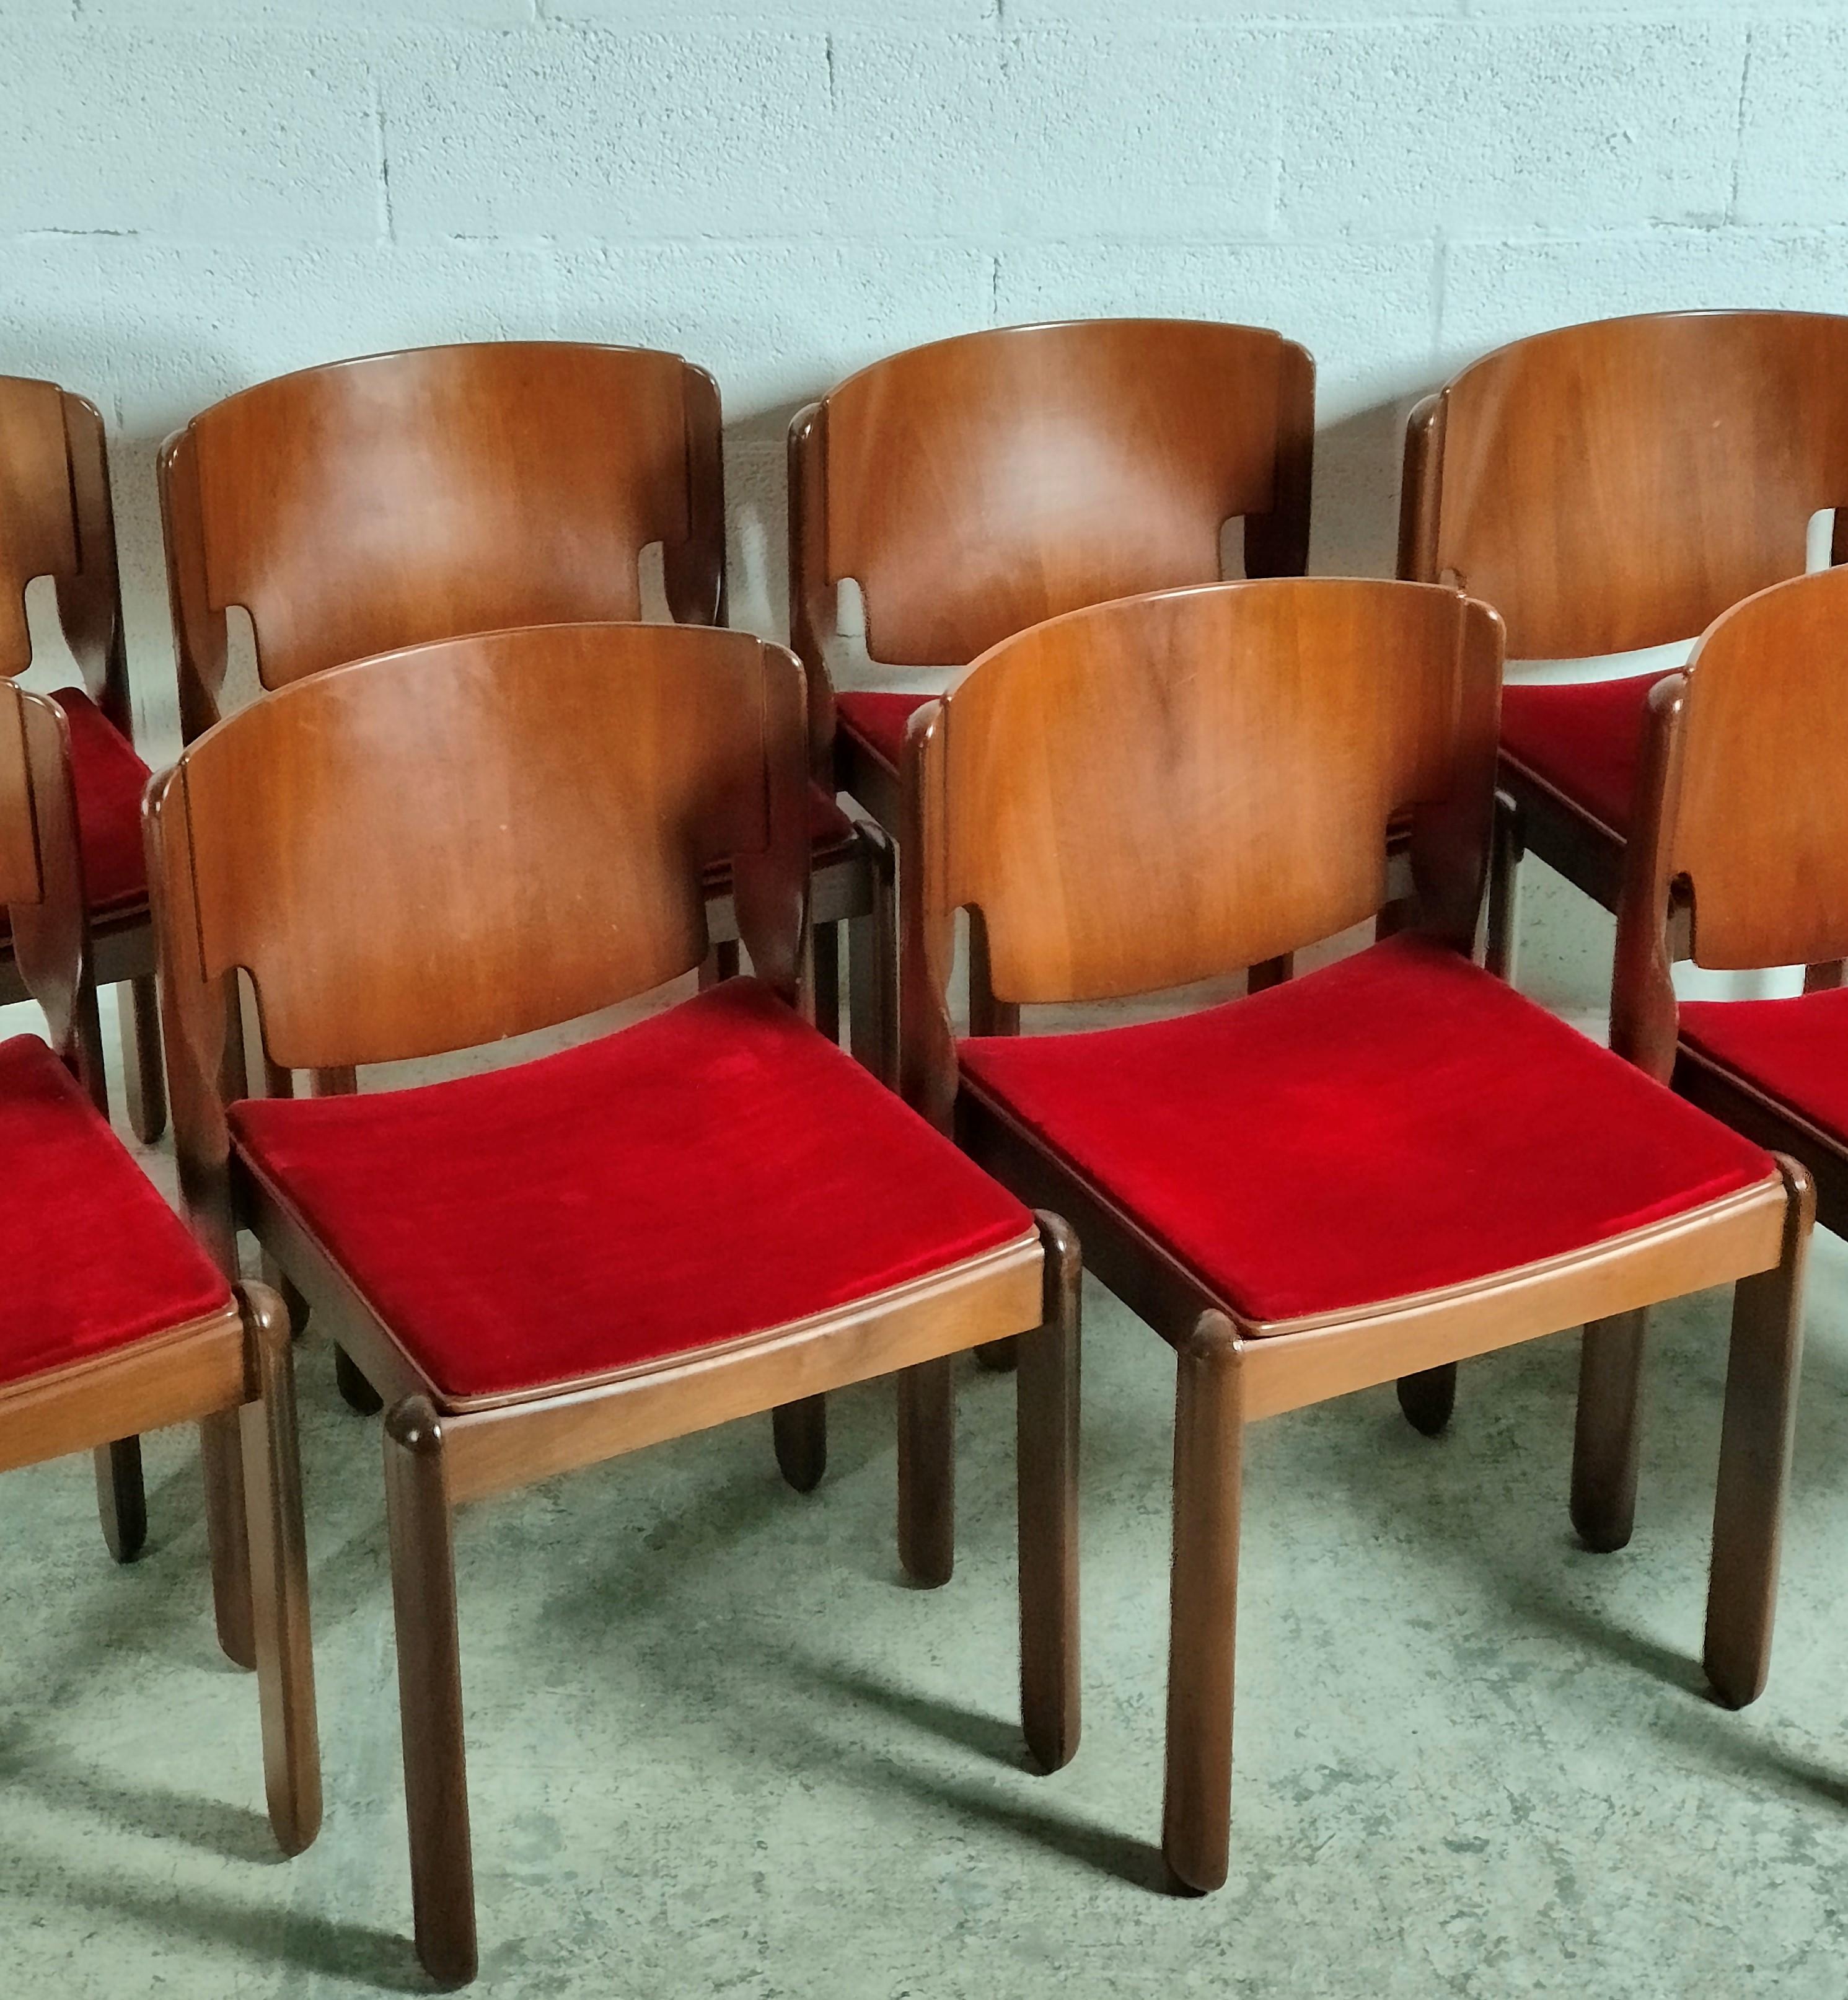 Italian Vico Magistretti 122 Model Chairs for Cassina, 1967